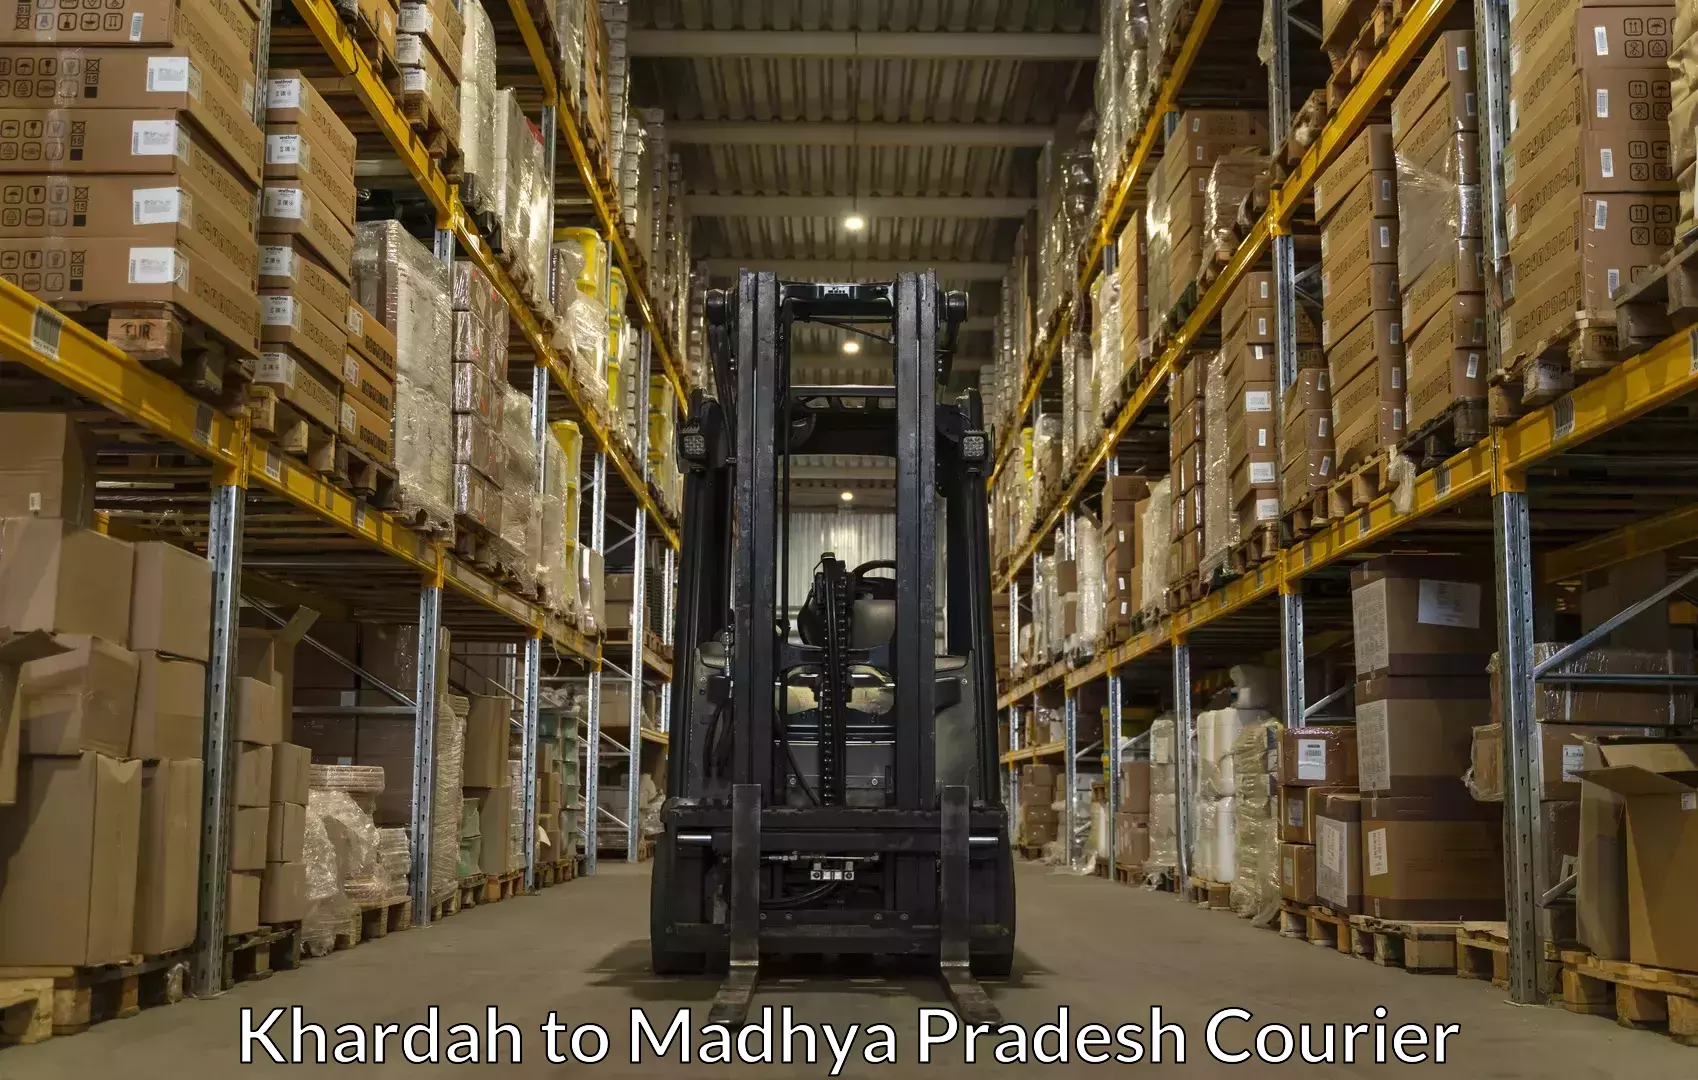 Luggage delivery optimization Khardah to Madhya Pradesh